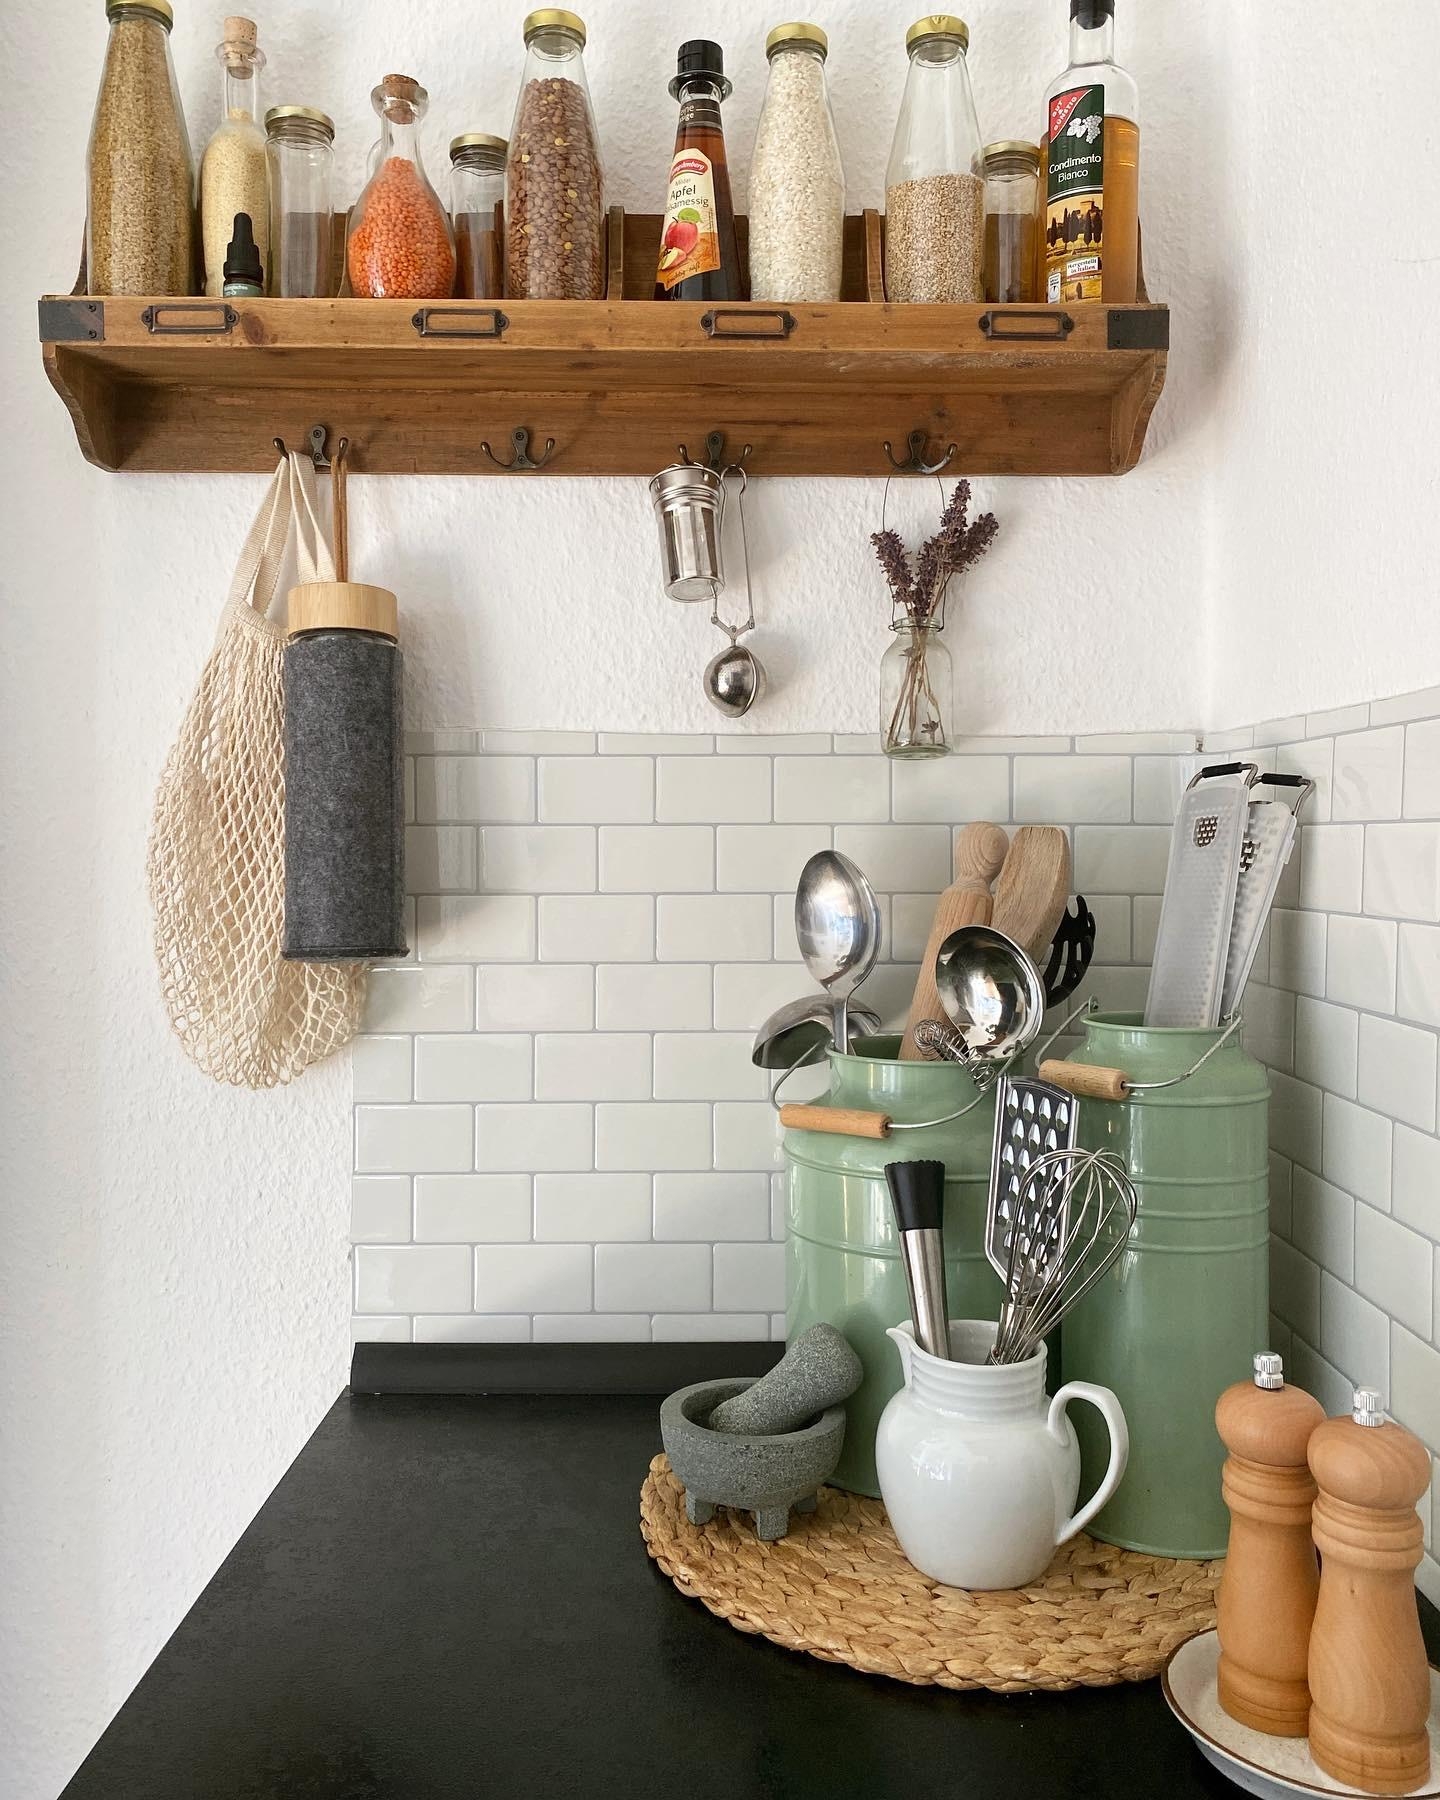 Küchenausschnitt 
#kleineküche #schwarzeküche #vintage #boho #holz #nachhaltig #wandregal #küchenideen